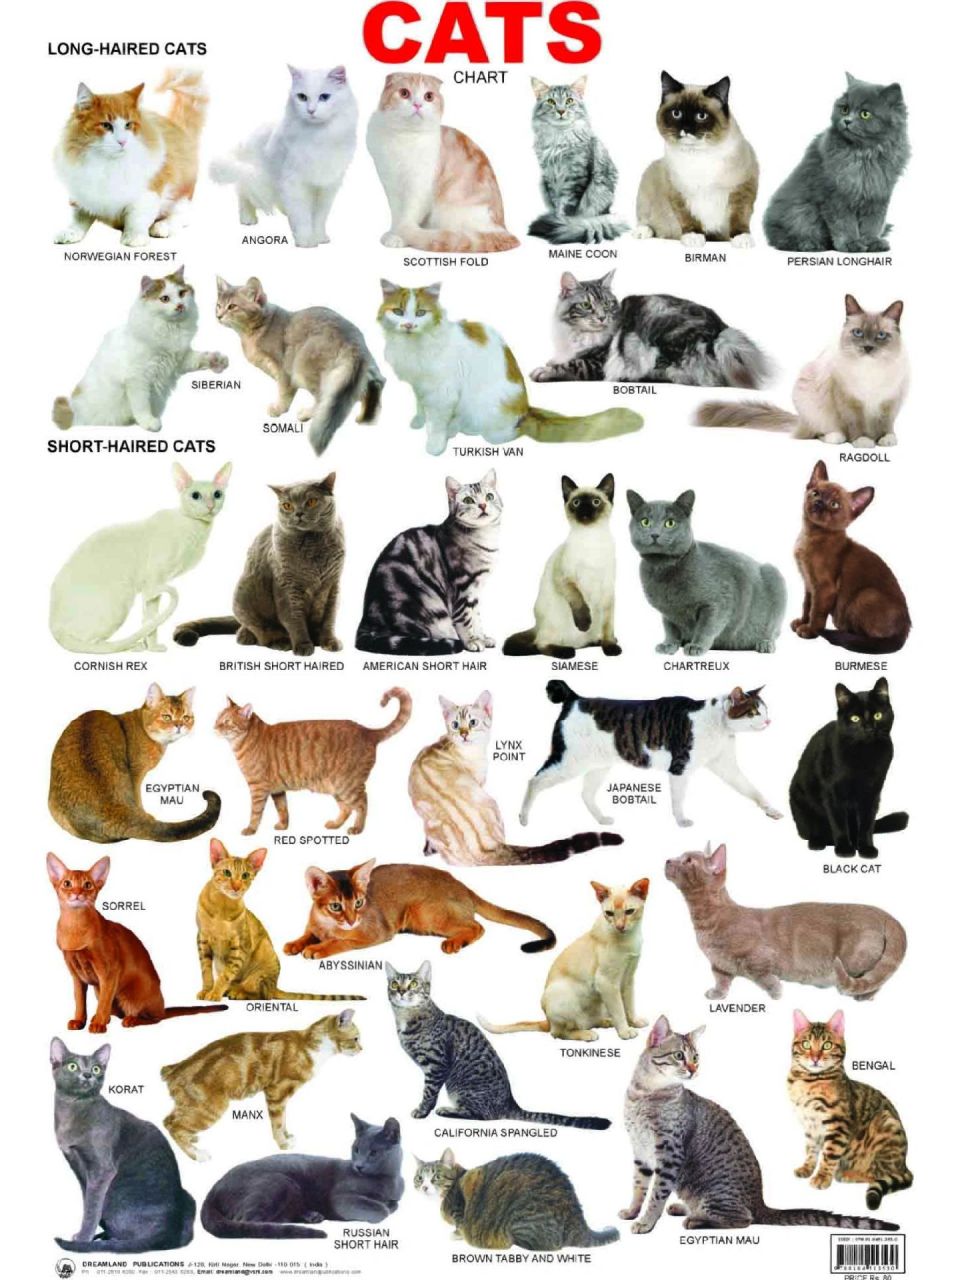 品种猫大全图片及名称图片